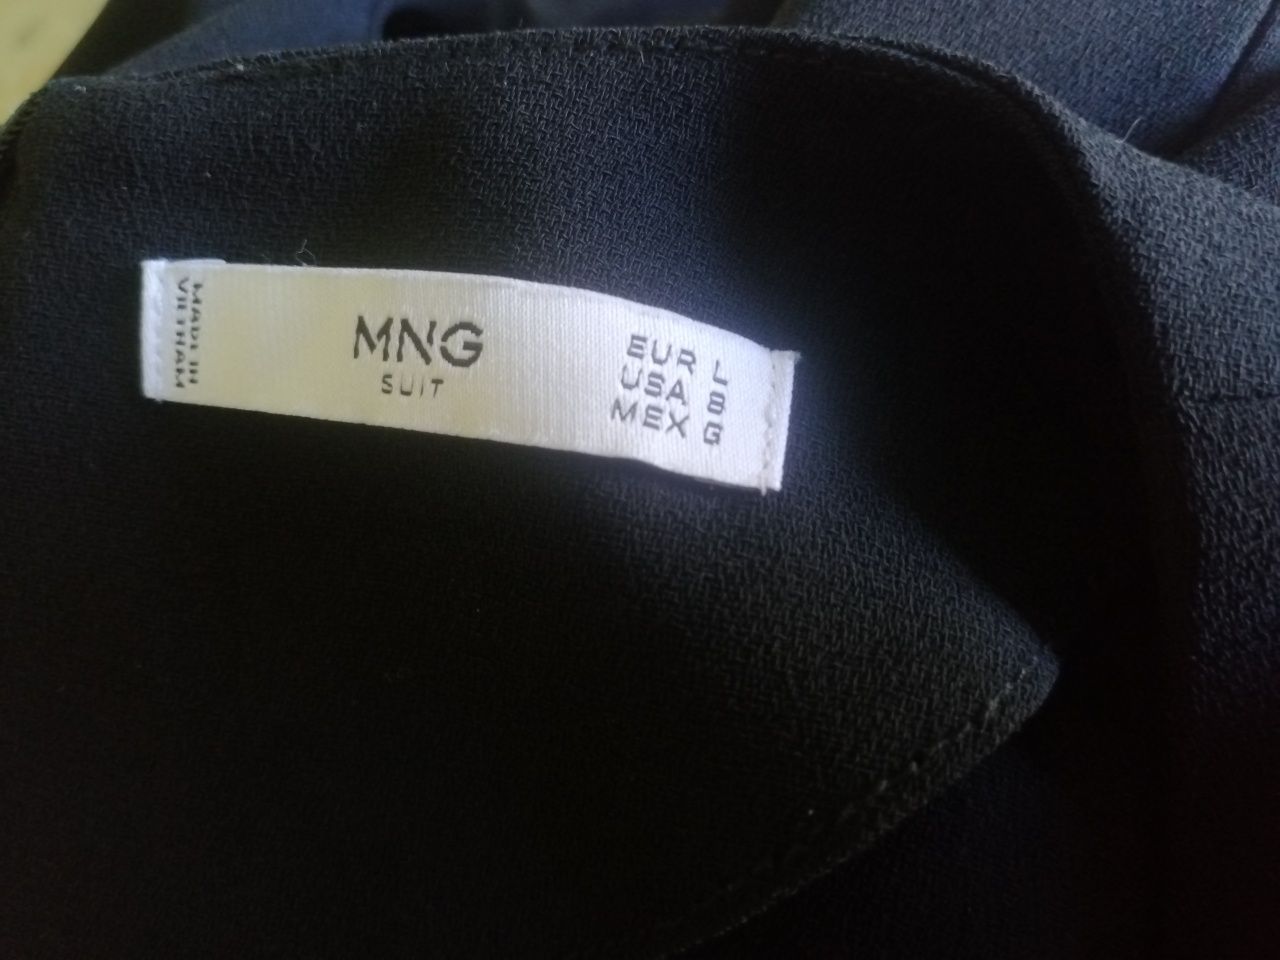 MNG Suit sukienka czarna, r. L, 40, M, 38